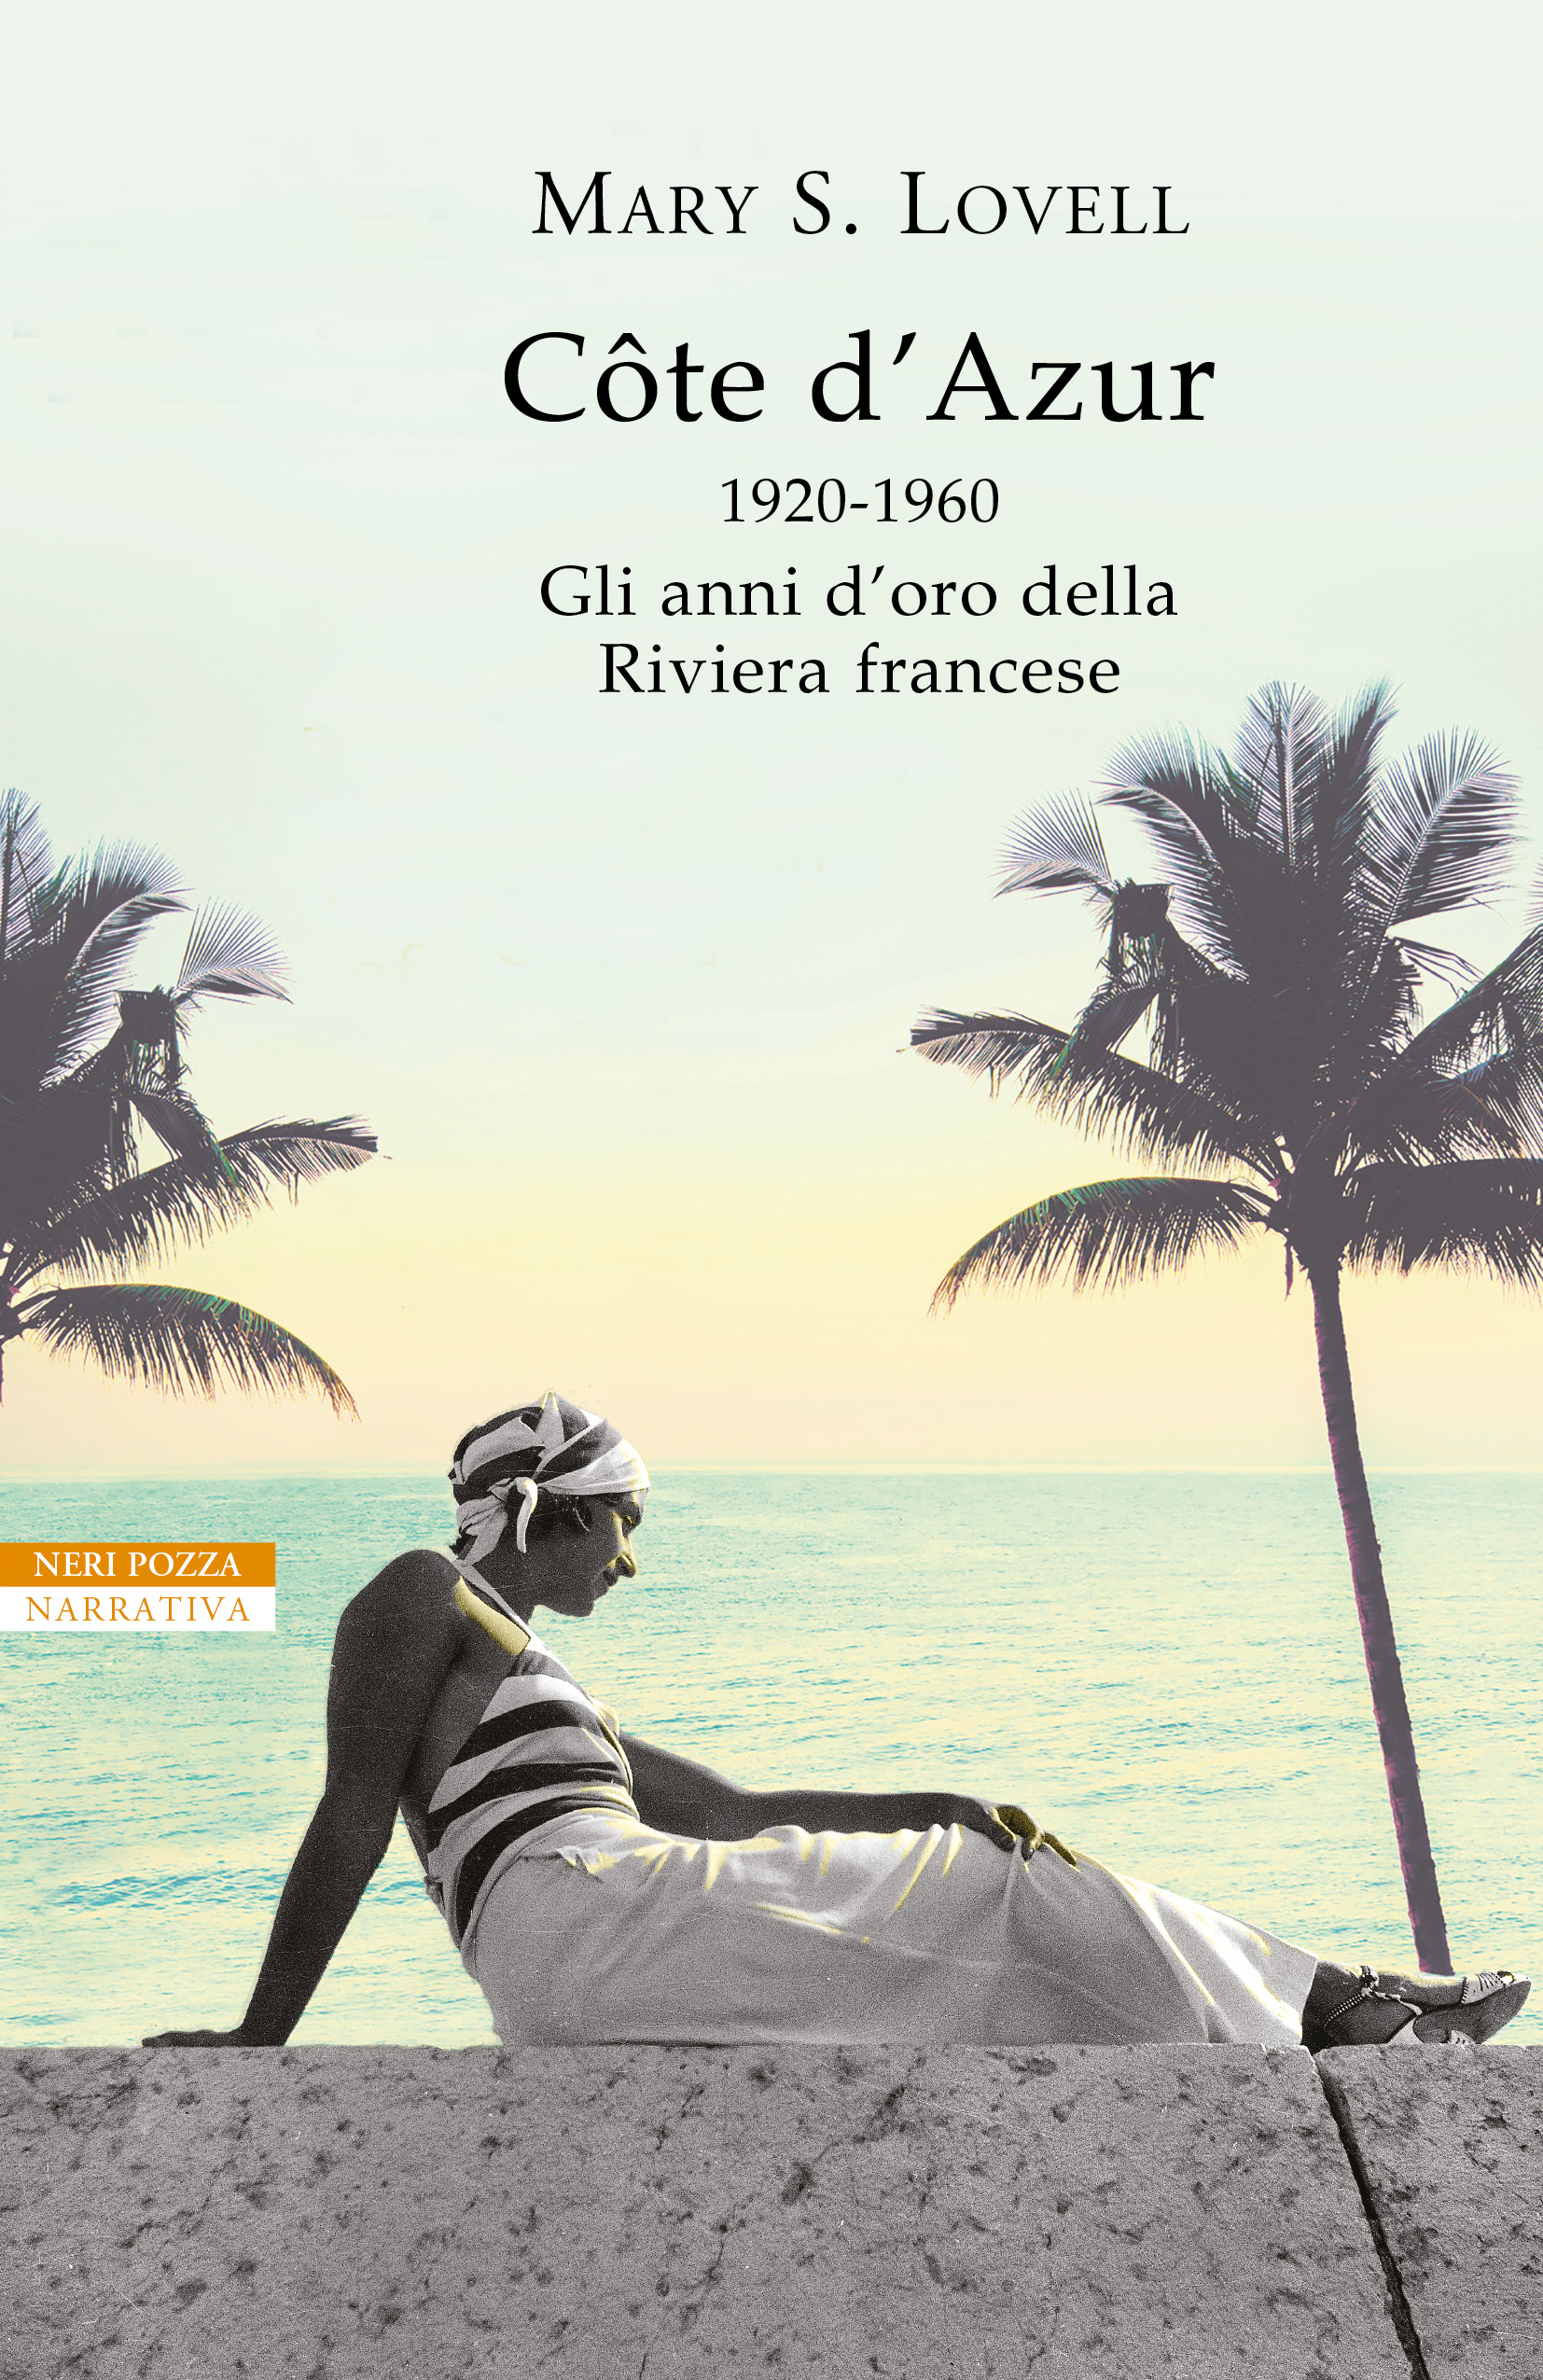 Cote d'Azur. 1920-1960- gli anni d’oro della Riviera francese Mary S. Lovell